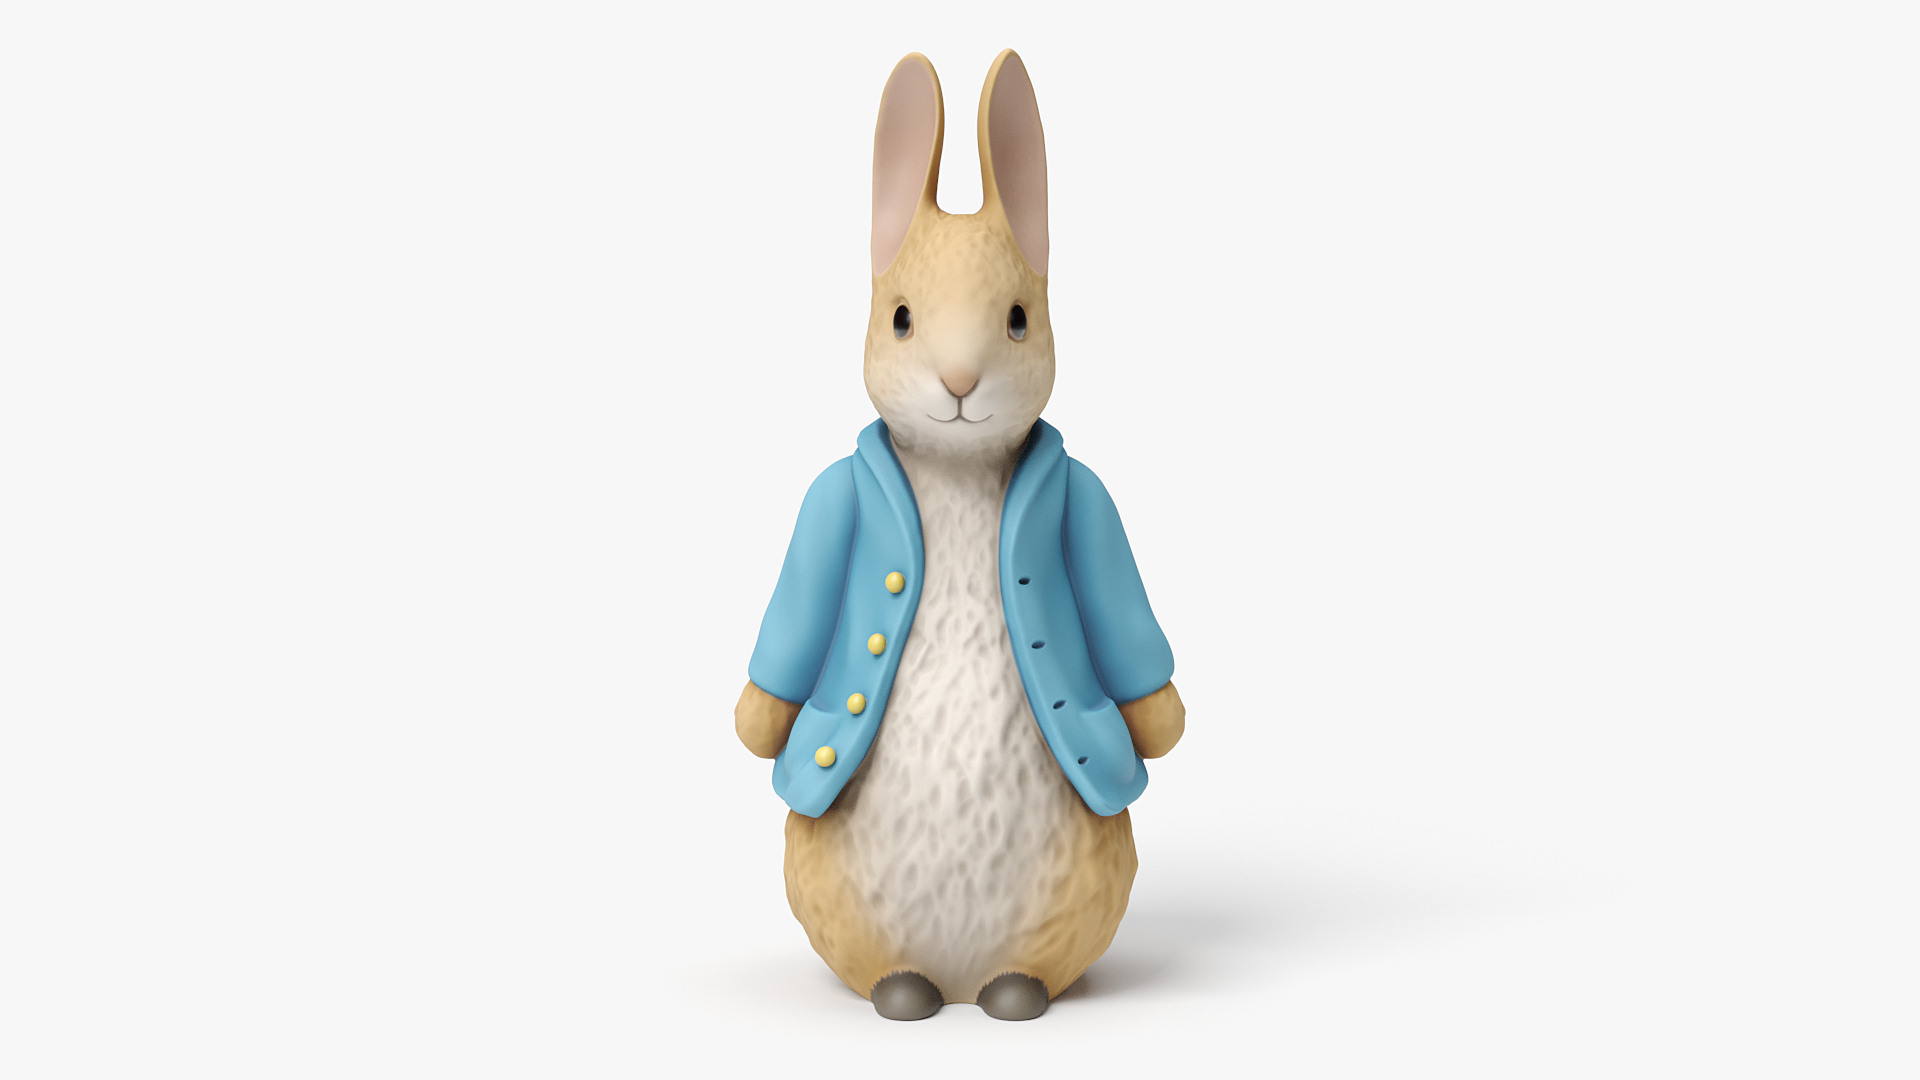 max bunny figurine https://p.turbosquid.com/ts-thumb/Ub/1Qyd9j/7j/01_turn/png/1611922043/1920x1080/turn_fit_q99/3c0742832133a233352535f462f3e0dcebd8724f/01_turn-1.jpg